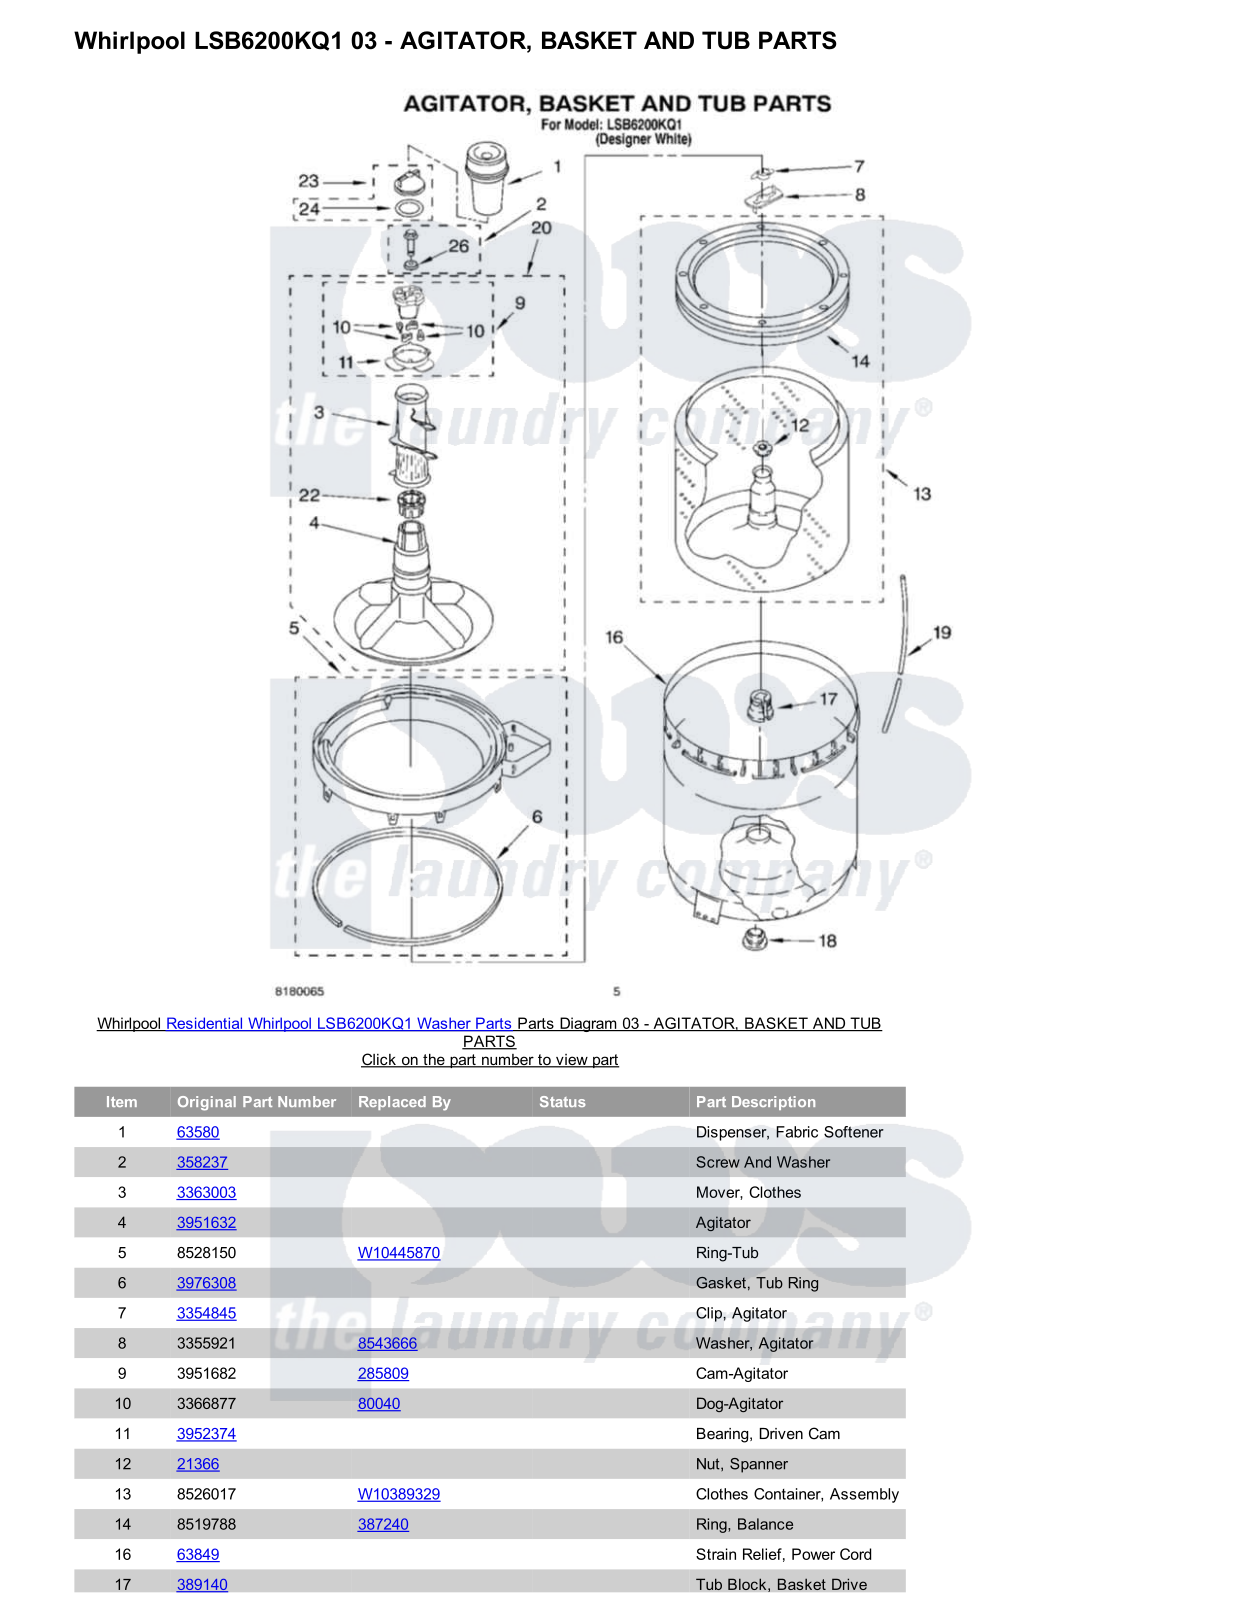 Whirlpool LSB6200KQ1 Parts Diagram